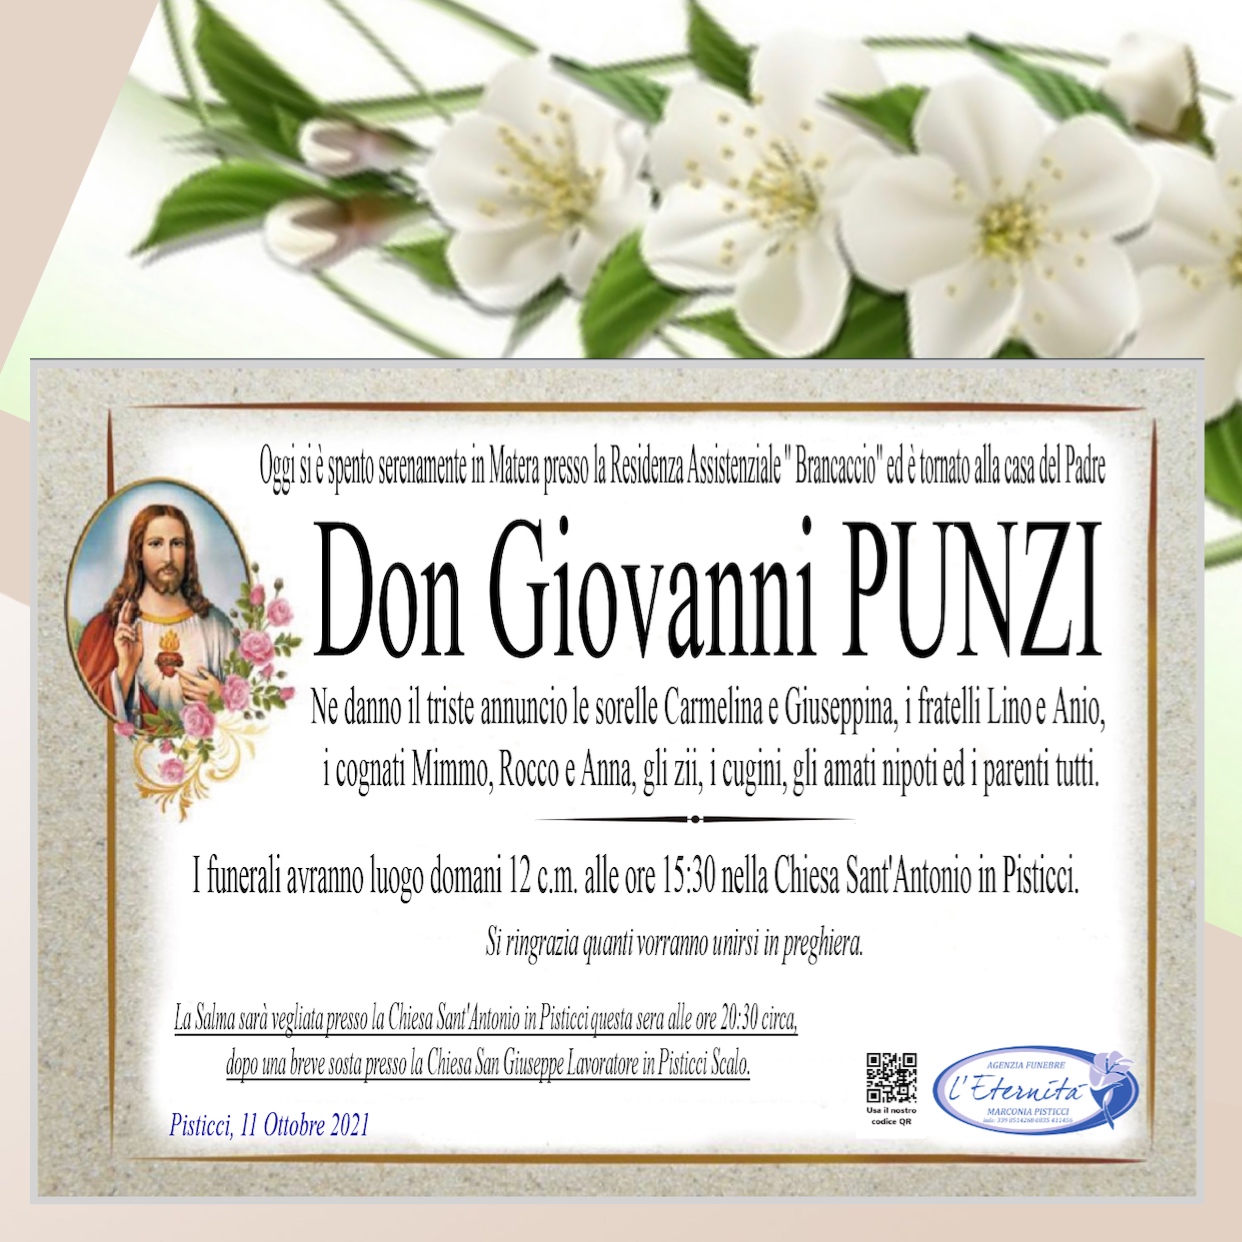 Don Giovanni PUNZI